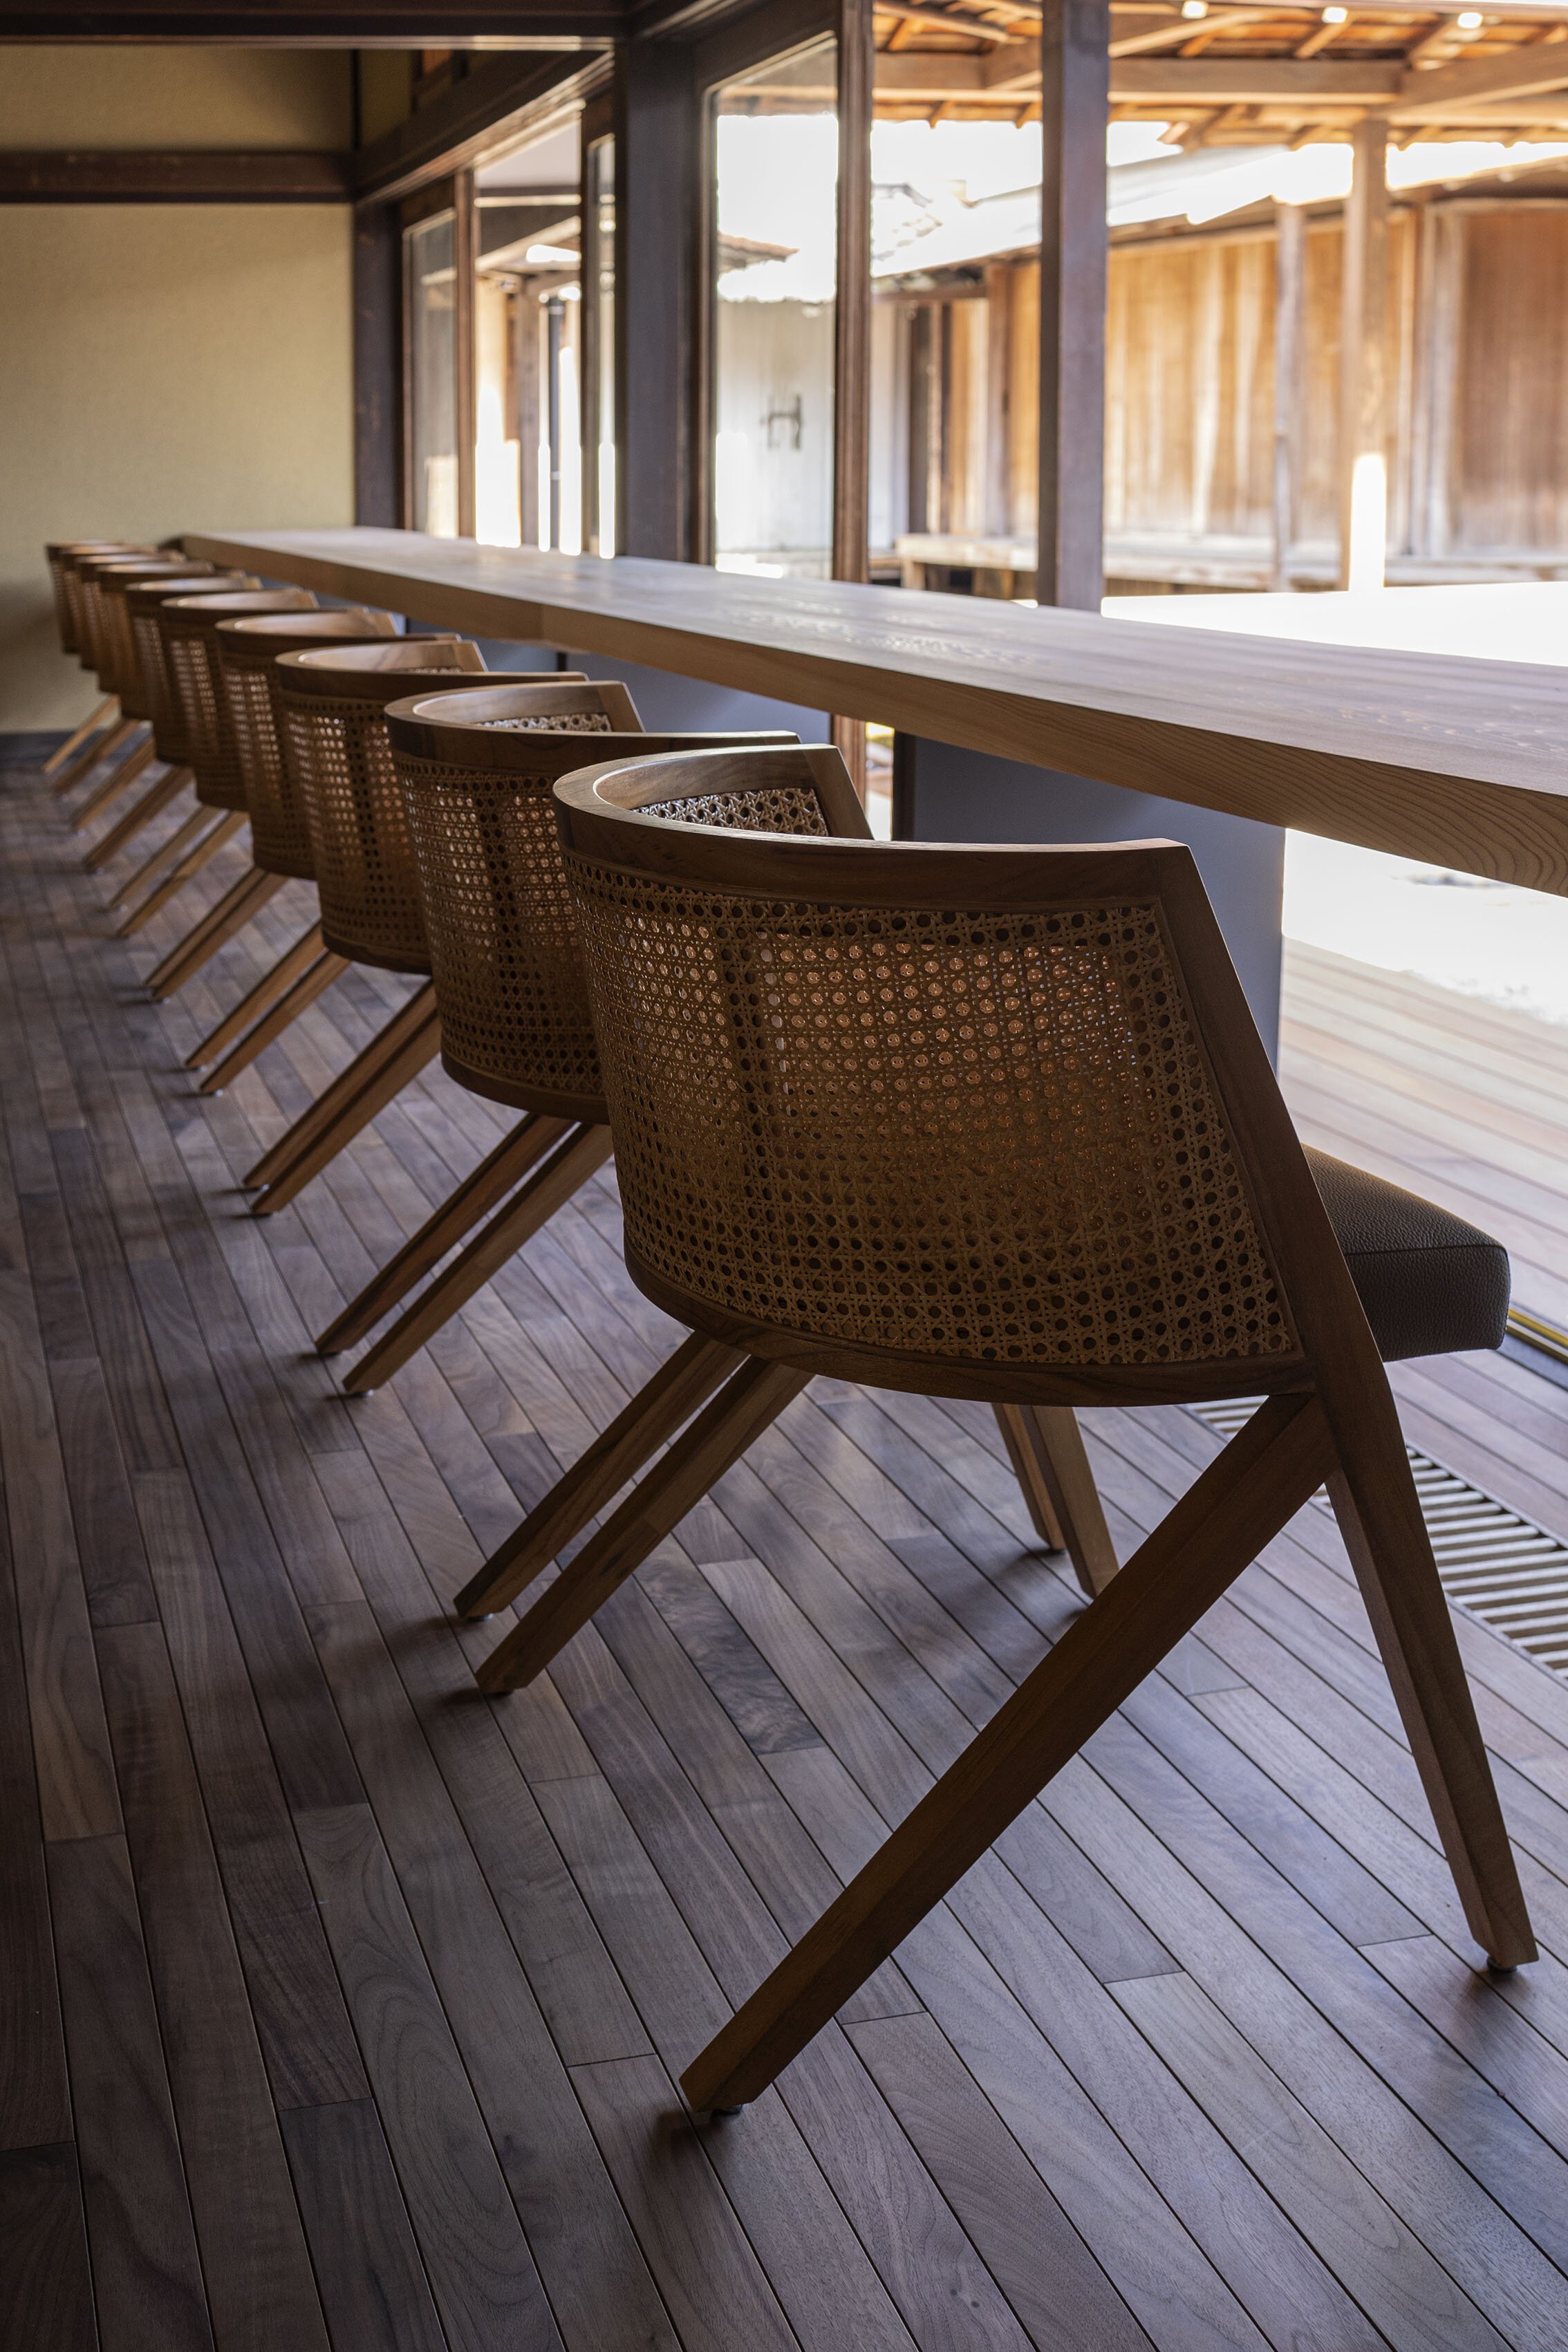  杉本博司と榊田倫之が率いる新素材研究所がデザインを手掛けた小田垣商店本店のカフェ。椅子はオリジナル 